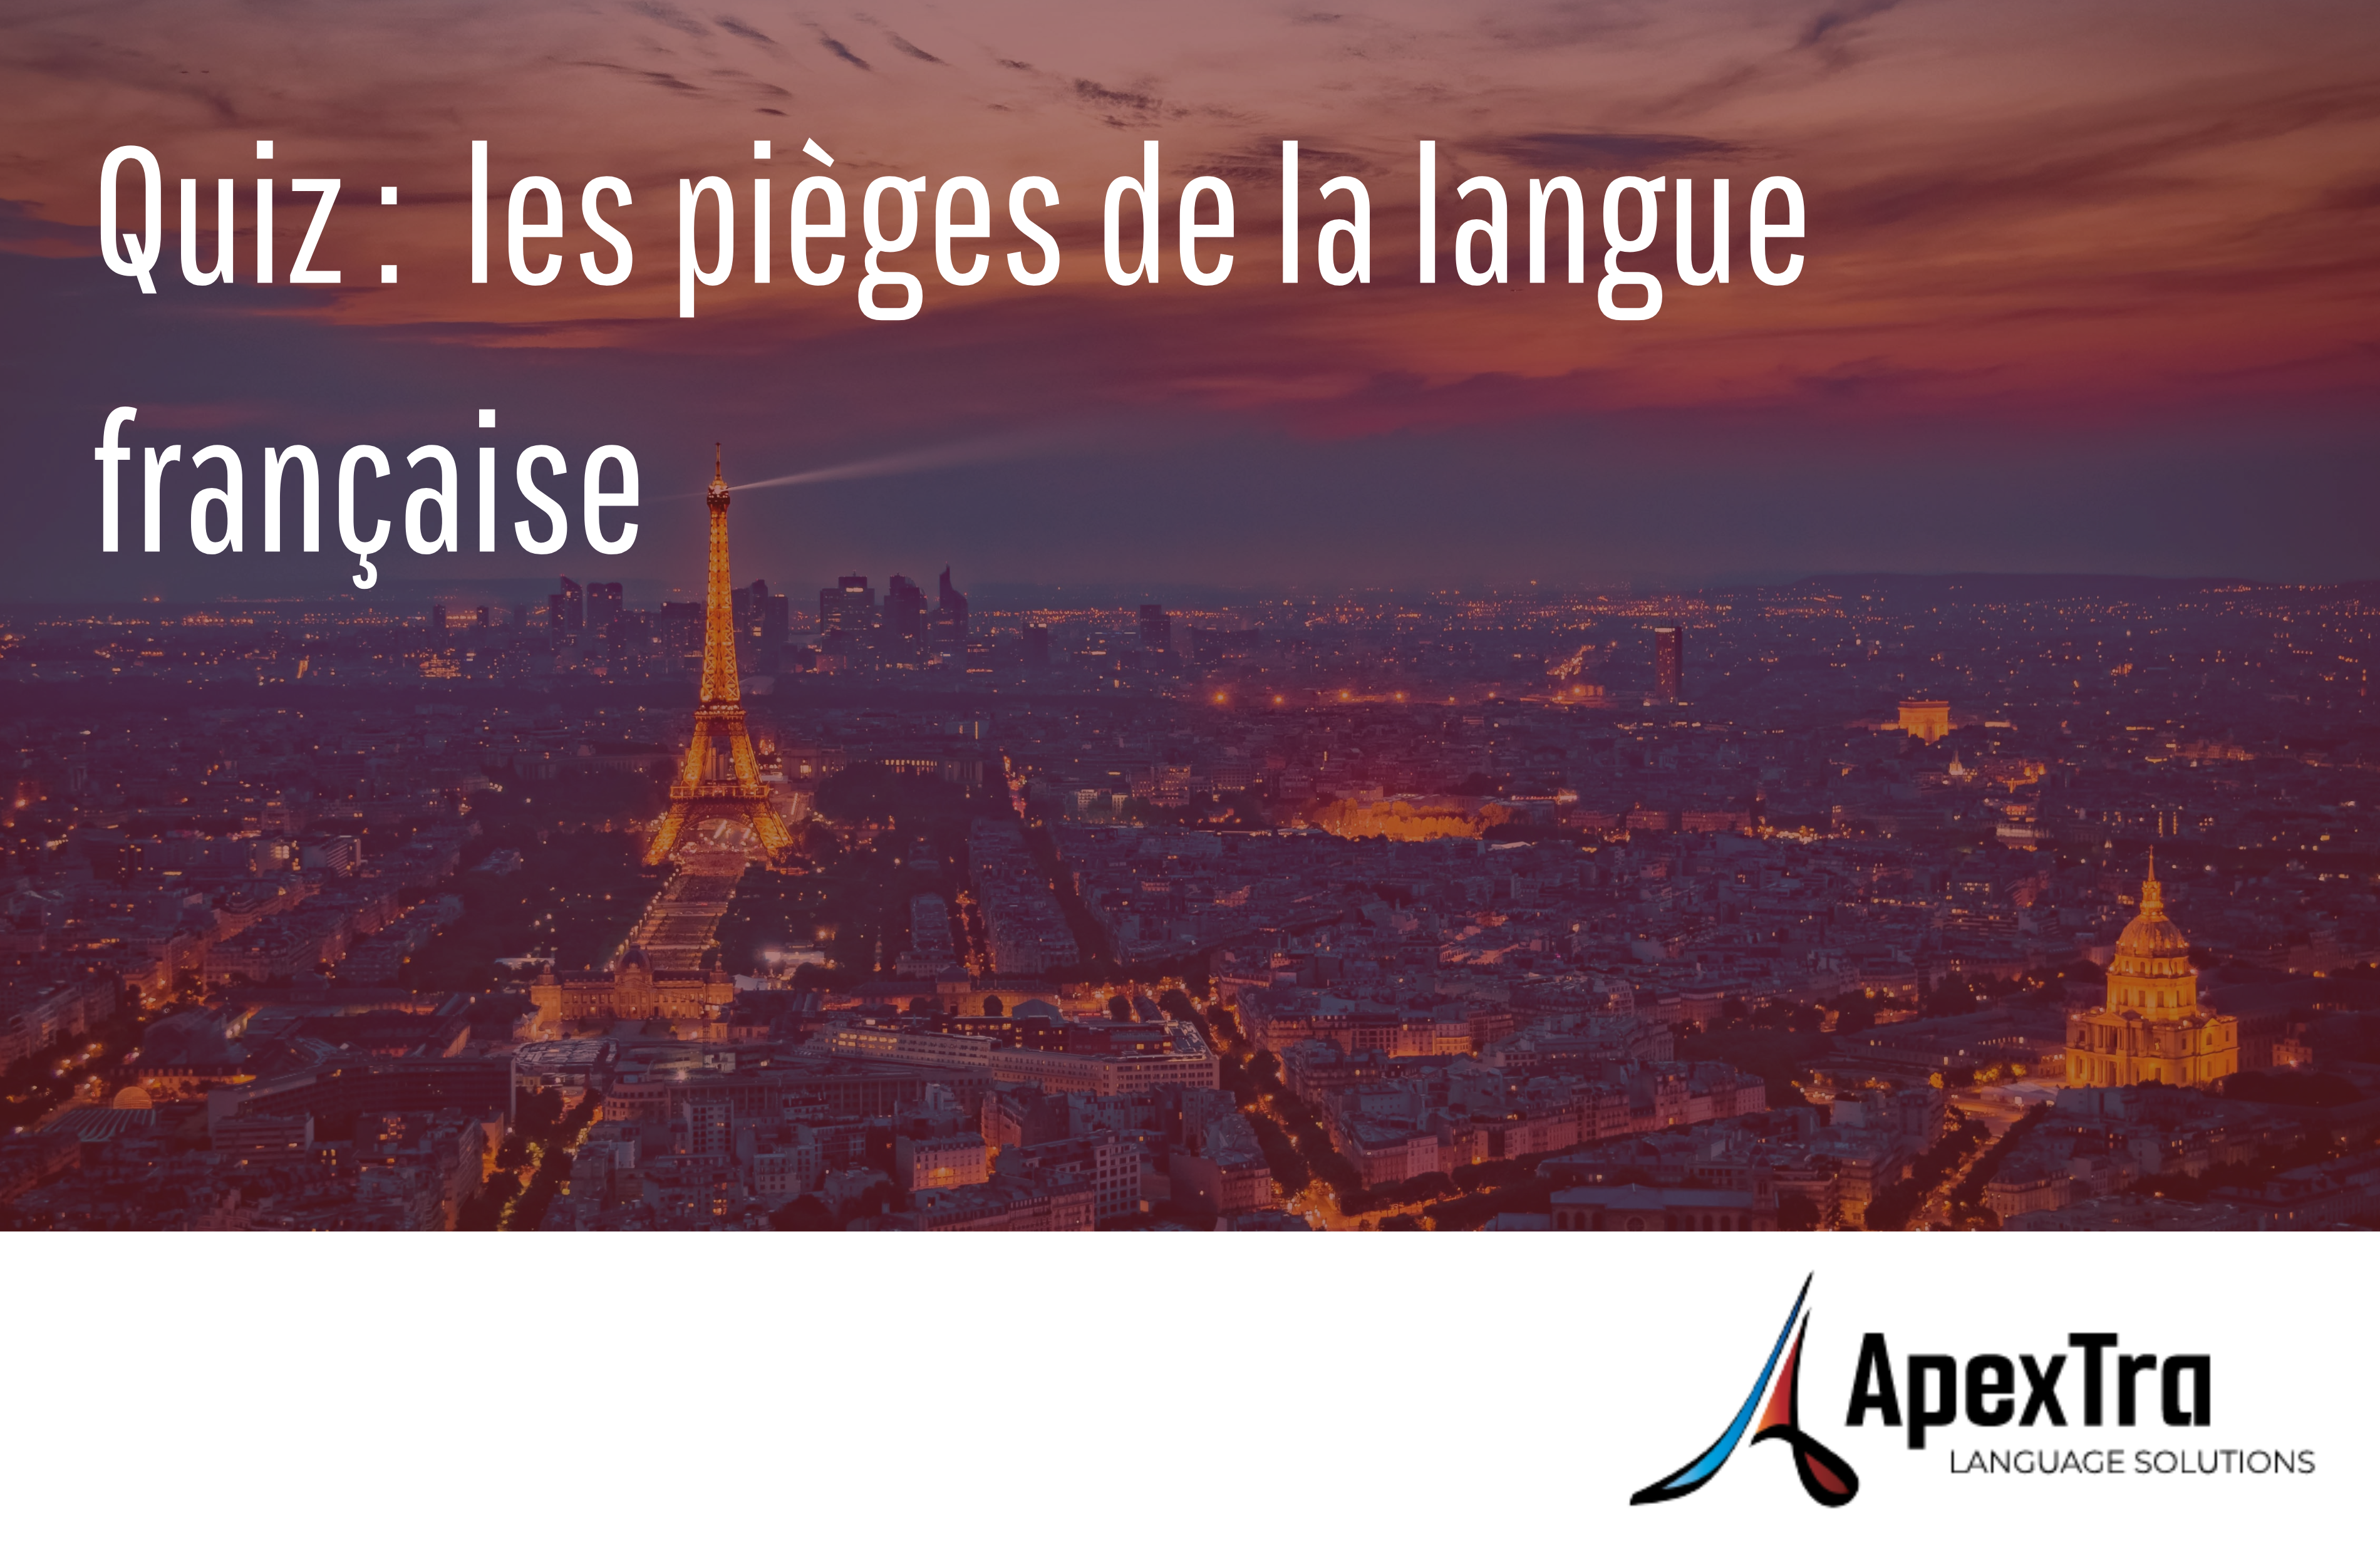 Quiz : les pièges de la langue française, en fond, image de la tour eiffel. Logo Apextra